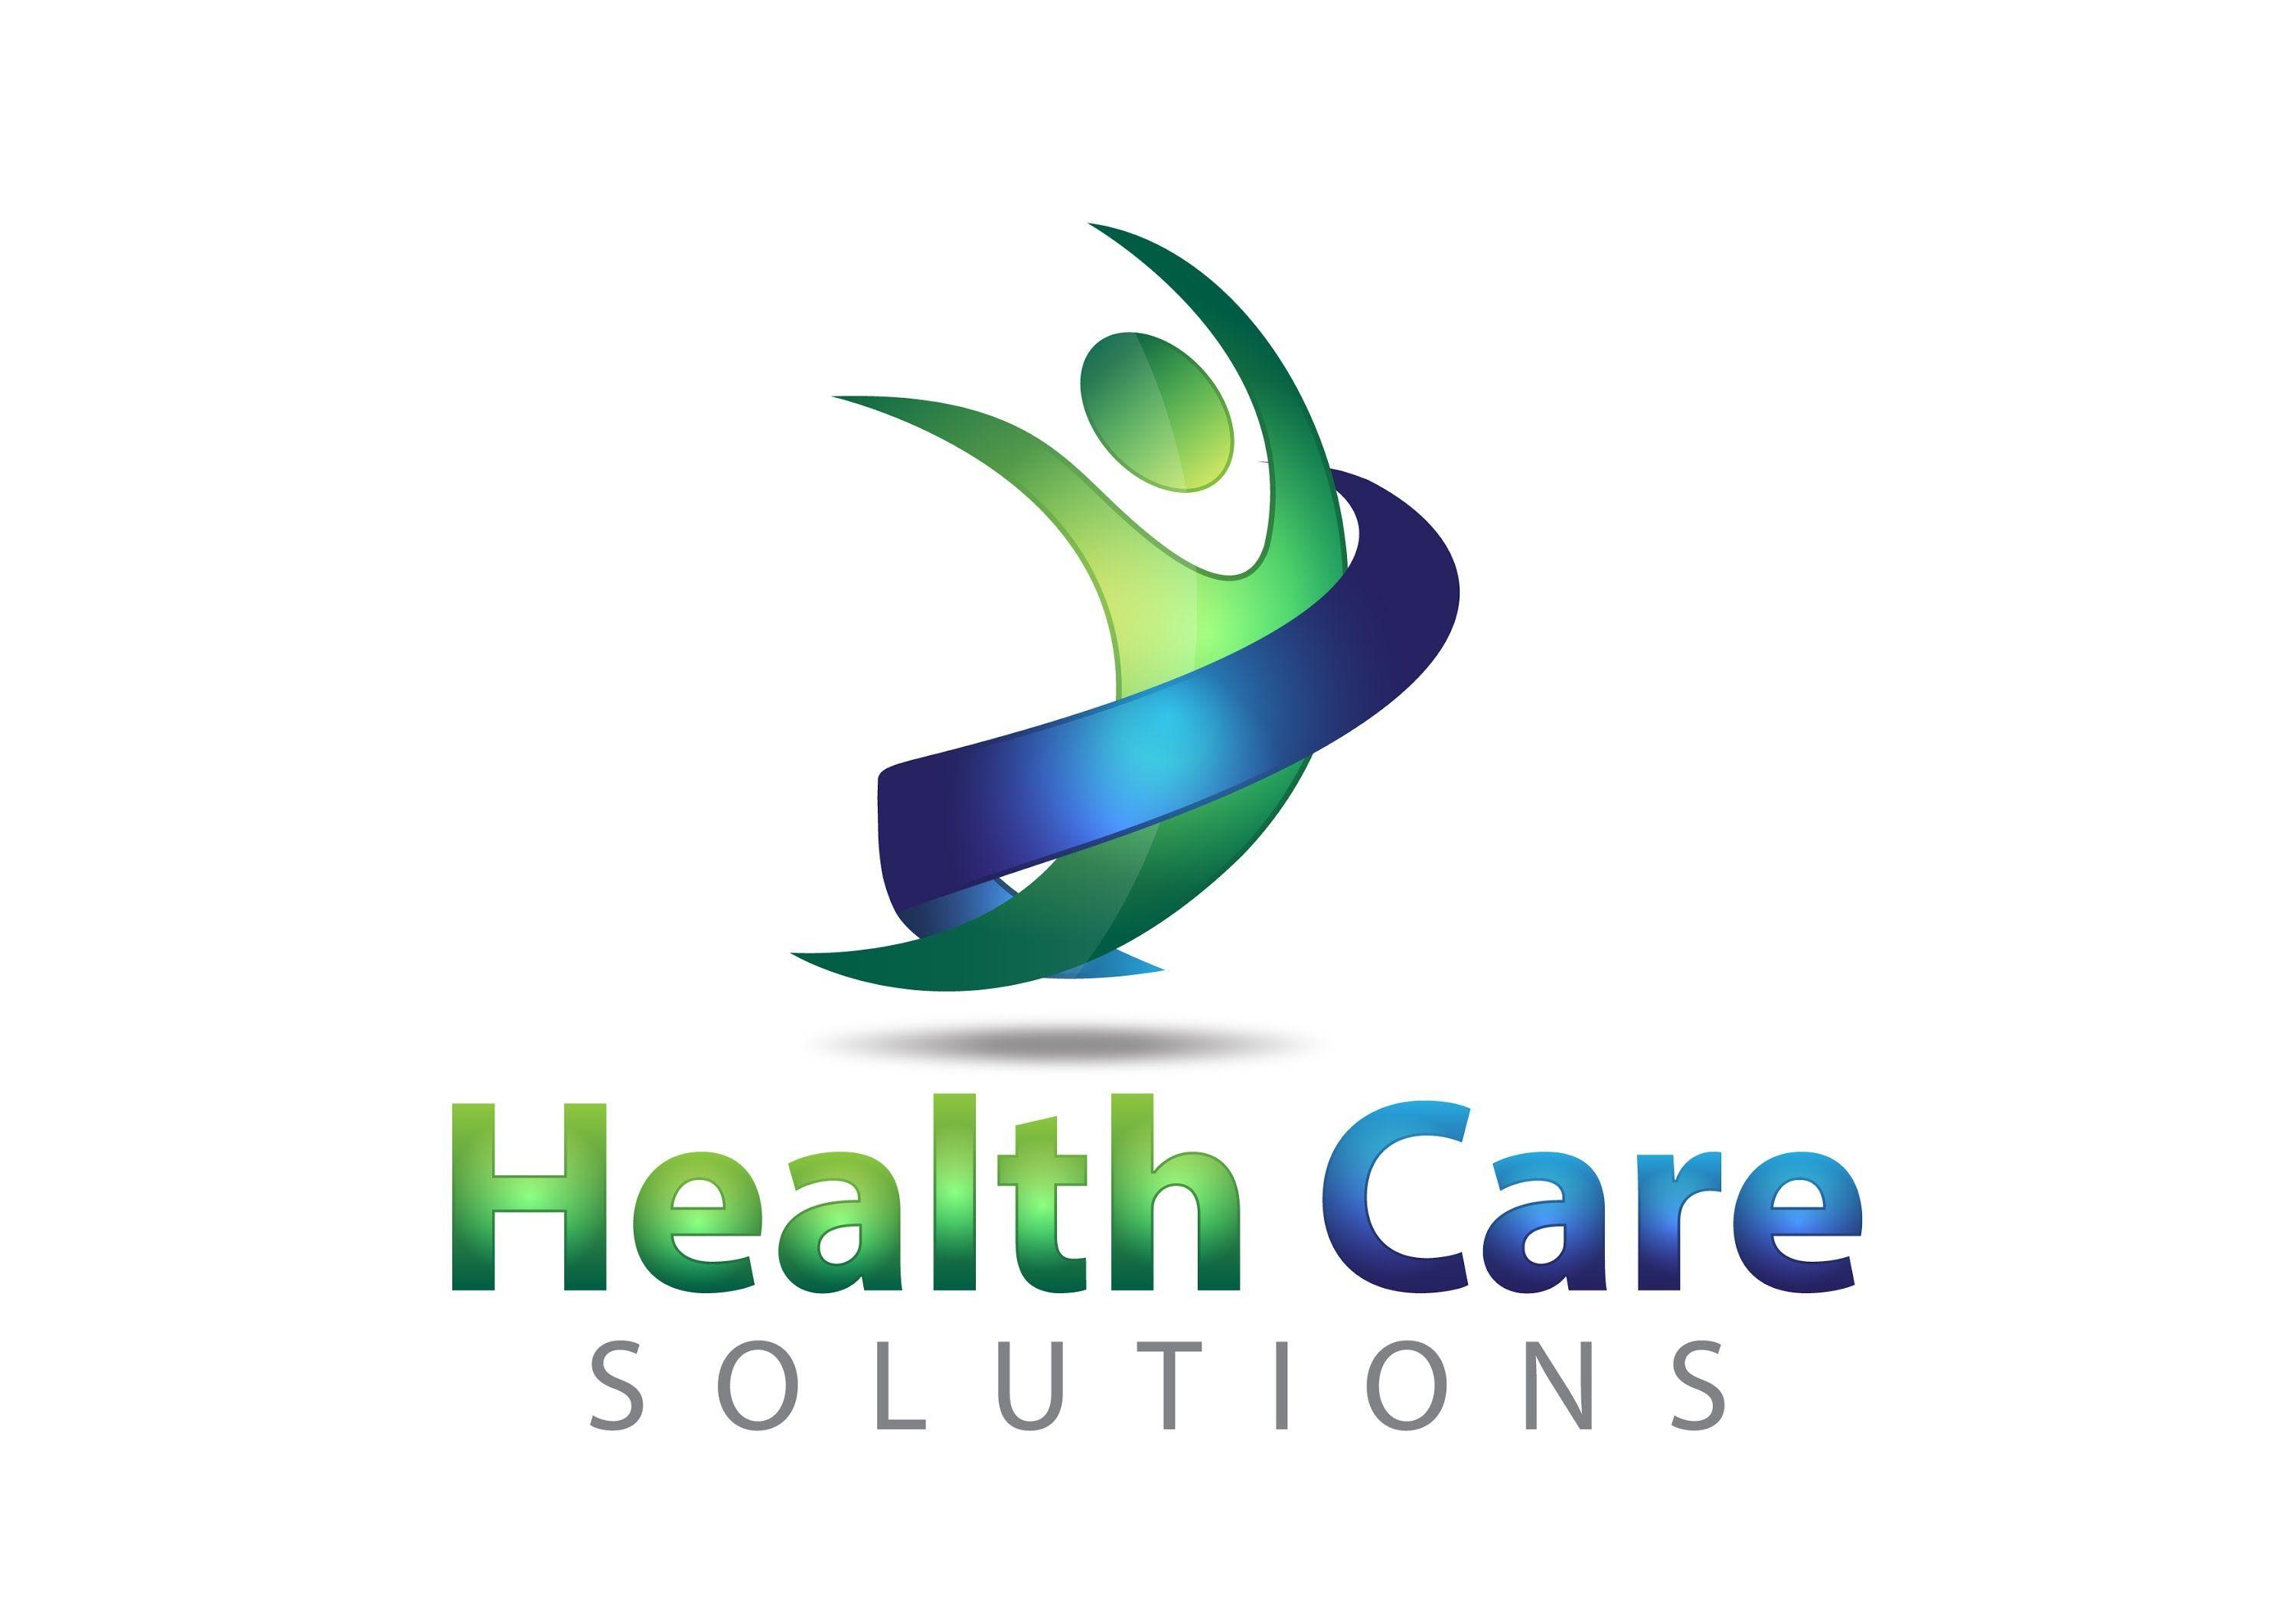 Health Care Logo - 13 Health Logo Design Images - Medical Logo Design, Home Health Care ...